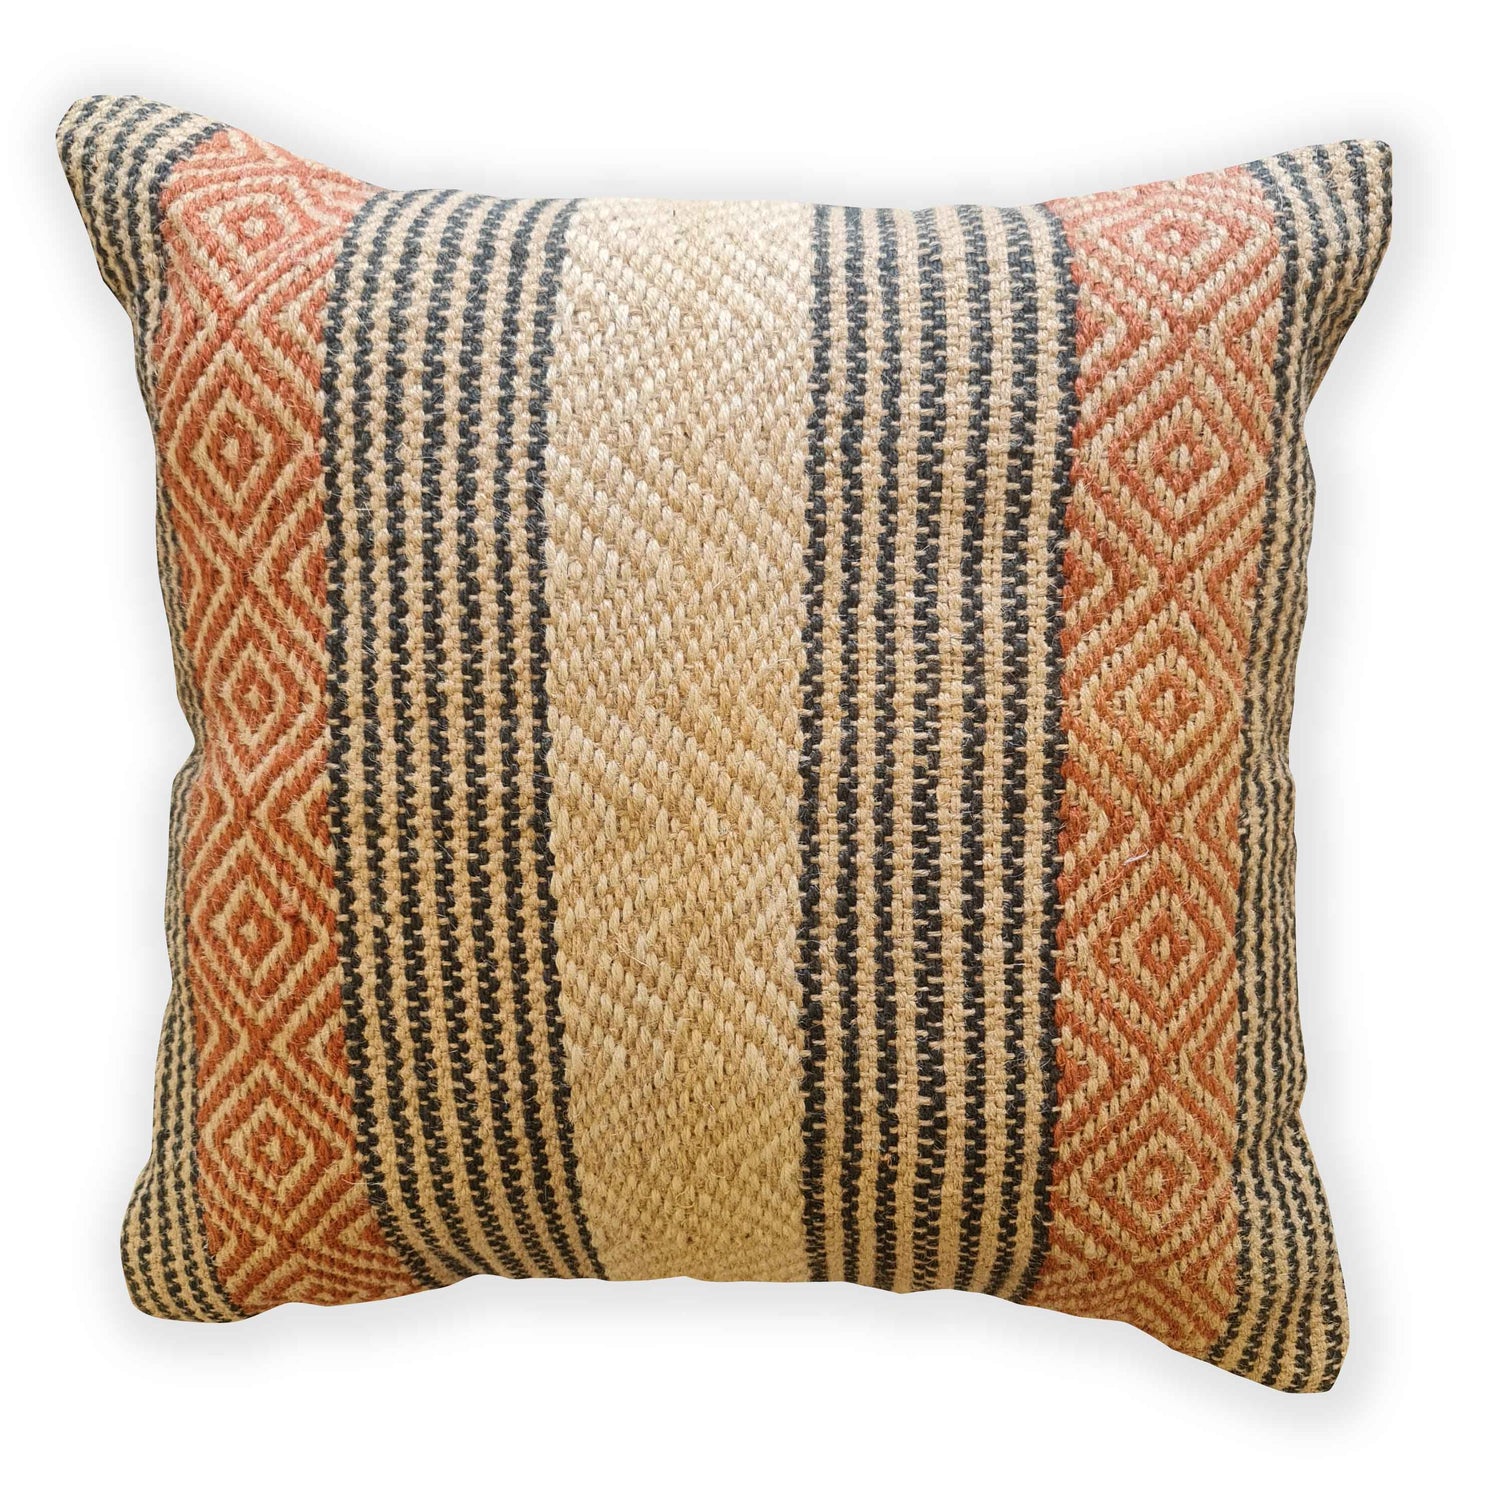 Cushions & Textiles